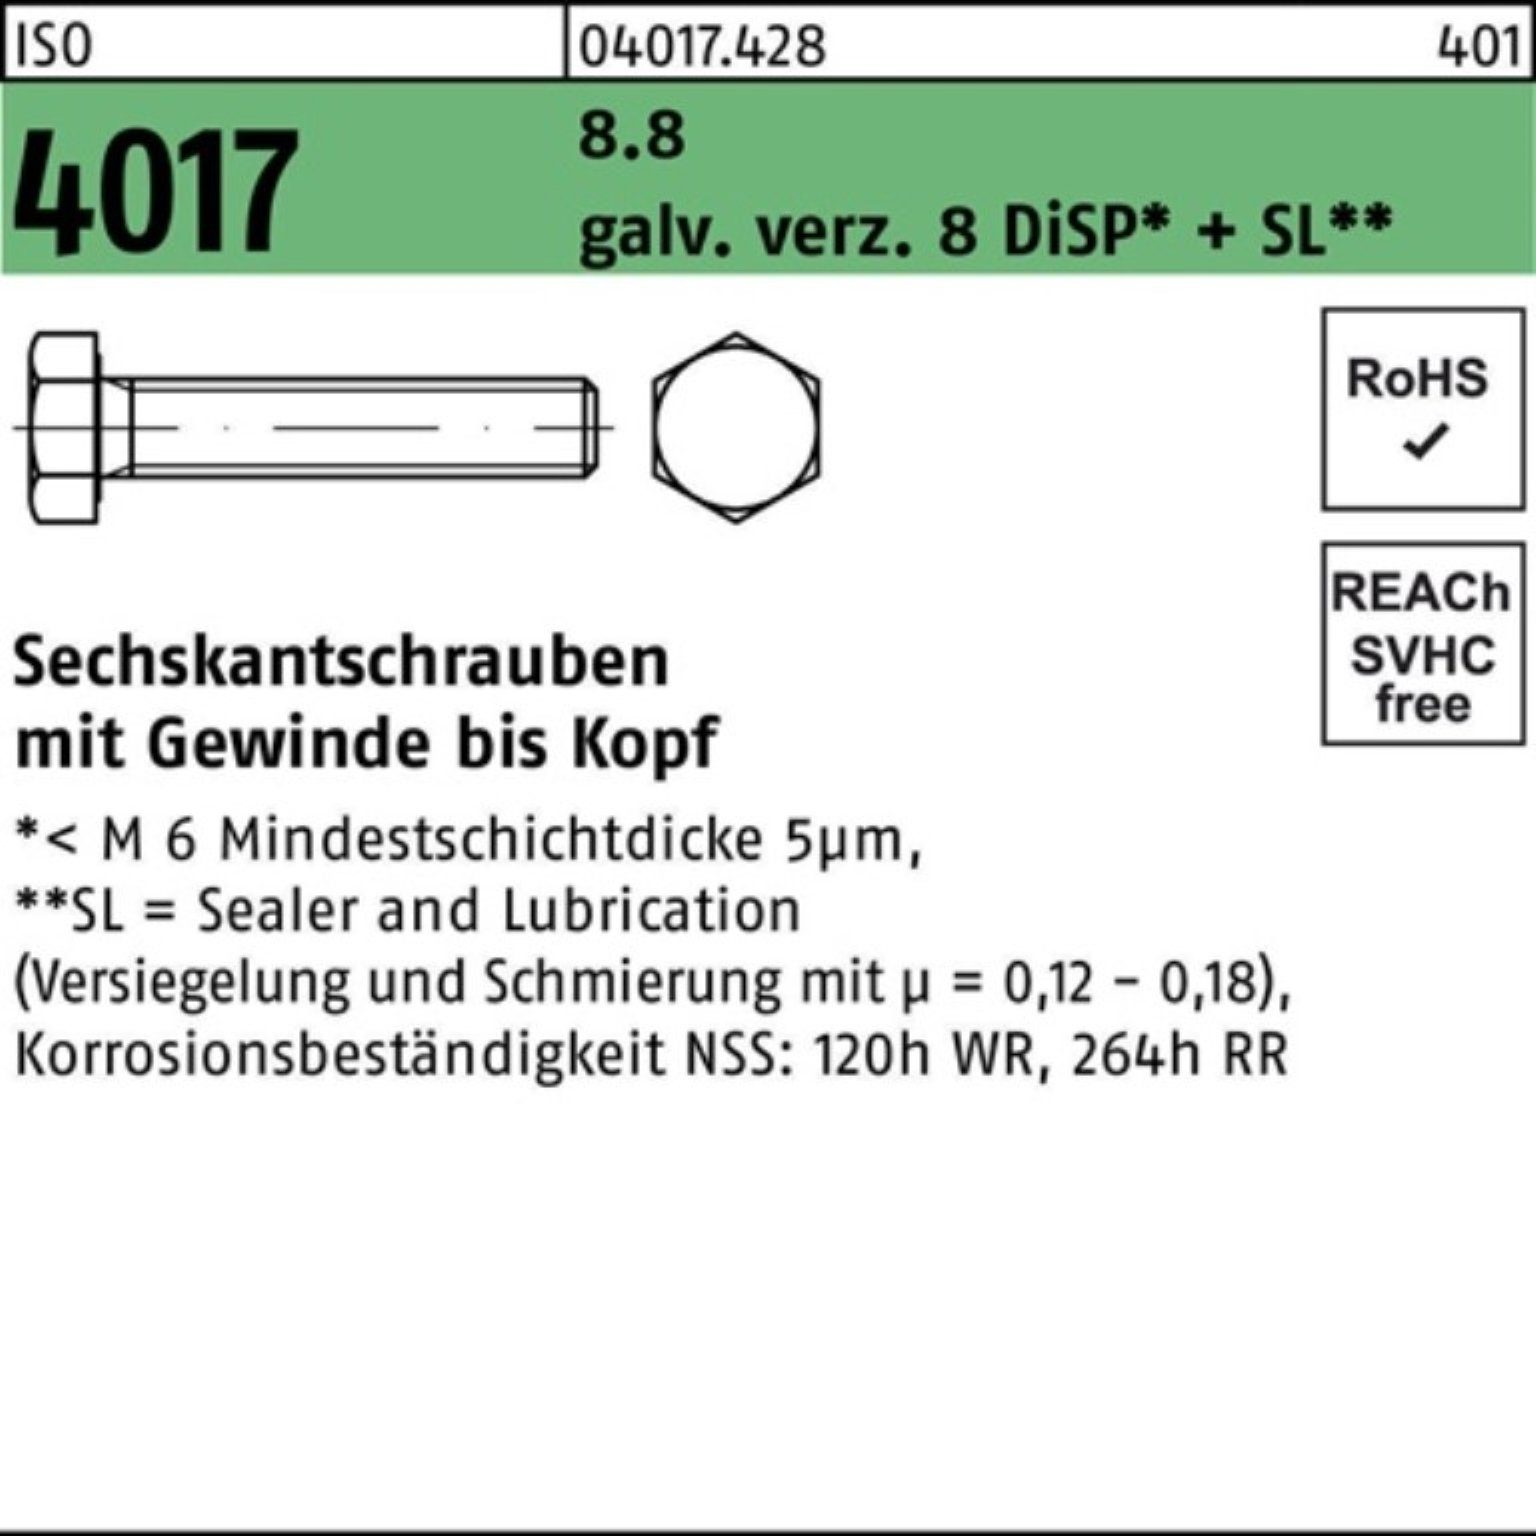 Bufab Sechskantschraube 100er DiSP galv.verz. 8 4017 M10x 55 Sechskantschraube VG Pack ISO 8.8